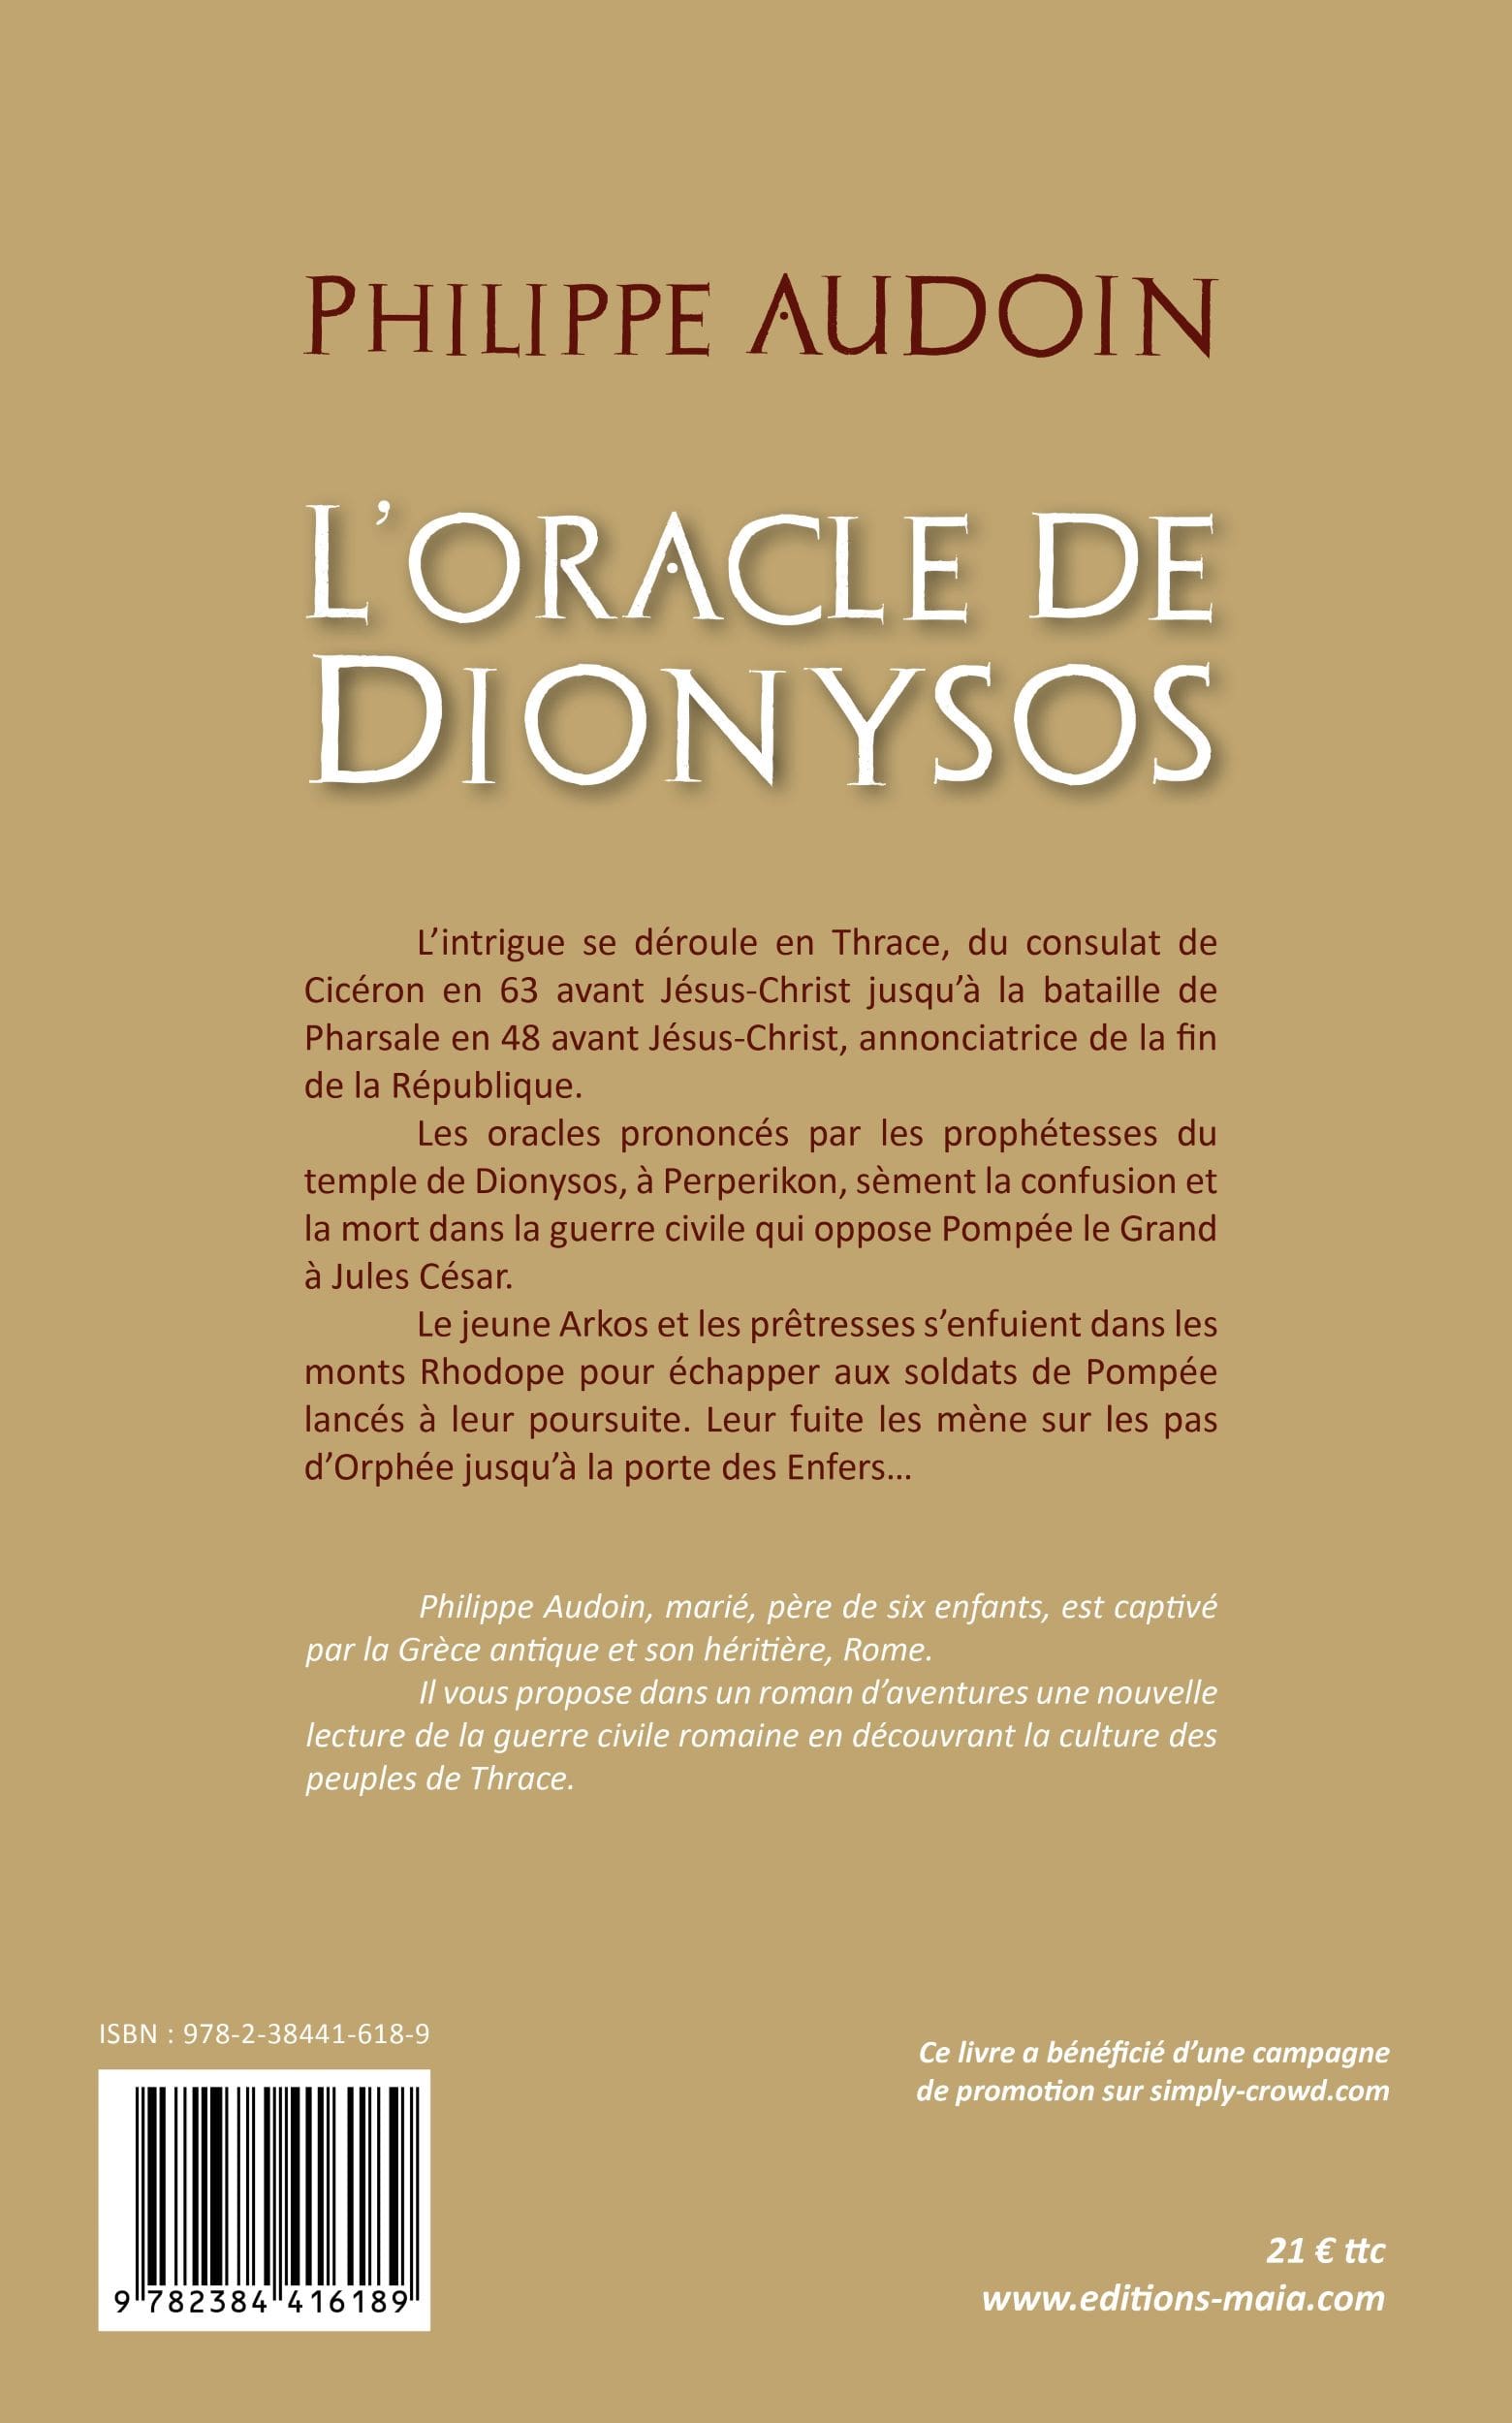 Philippe AUDOIN - L'oracle de Dionysos 2